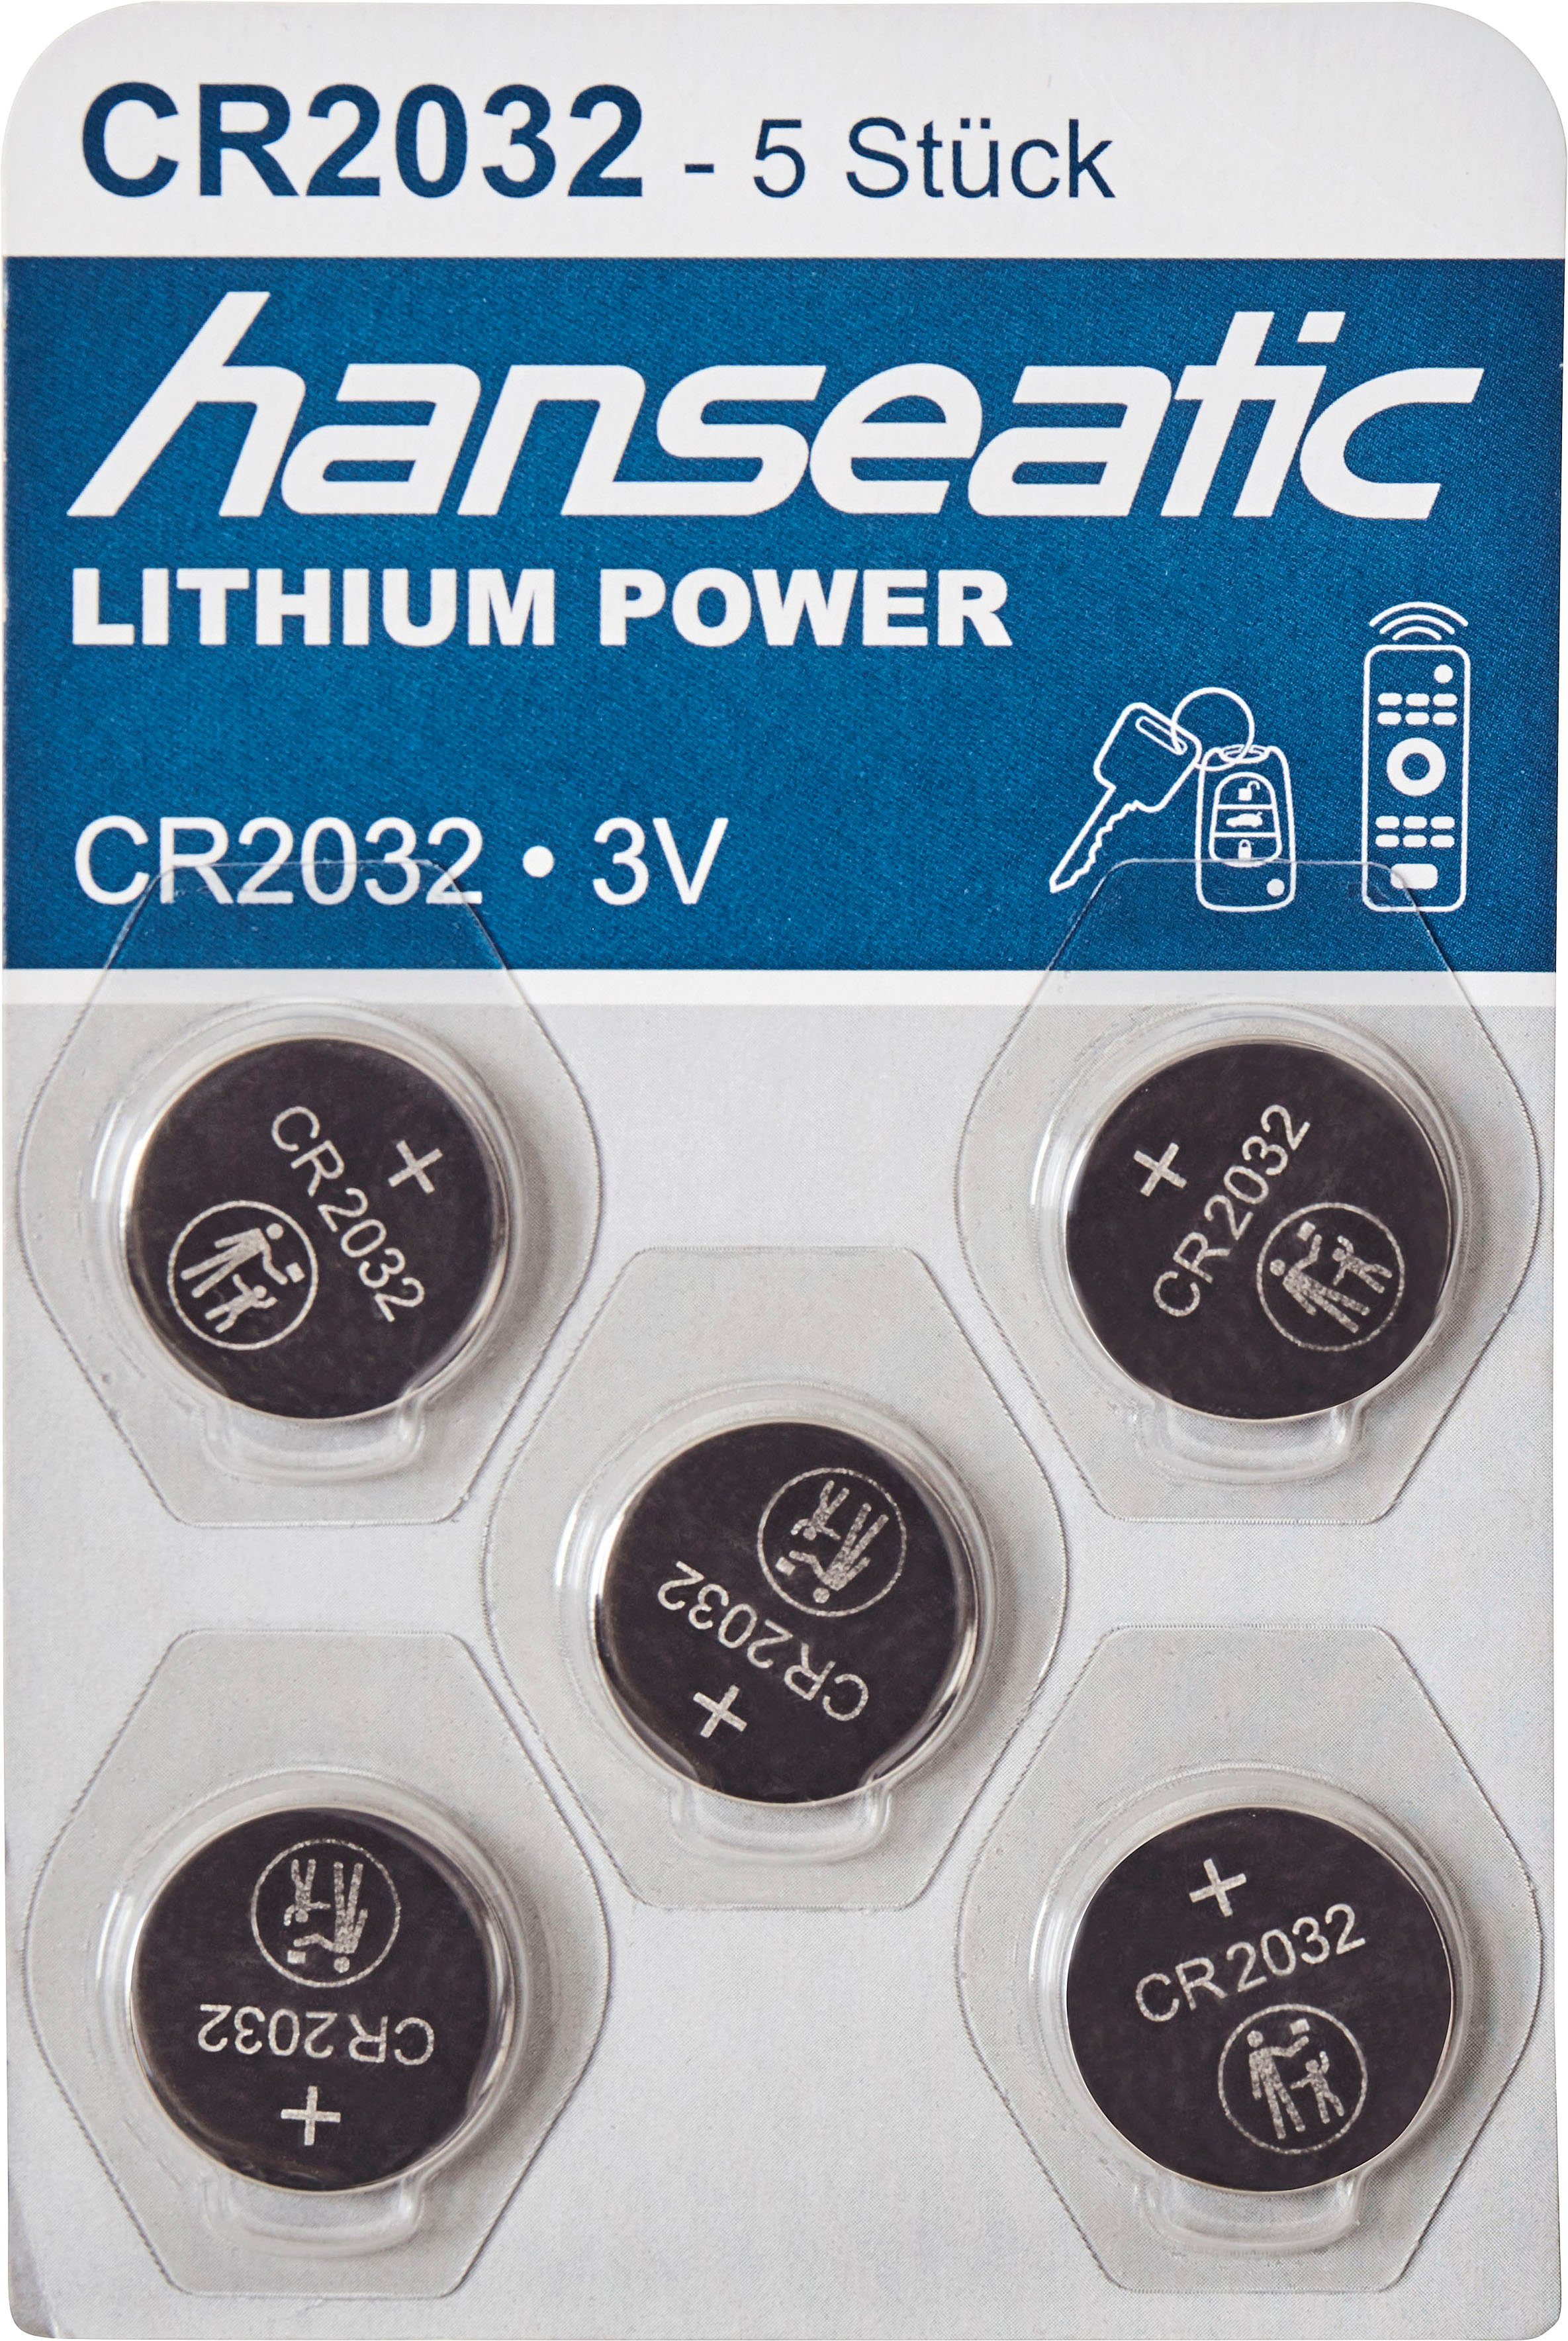 2025 5x Mix + Set Batterie Hanseatic 2032 15 St), CR 10x CR Stück Batterie, CR2032 (15